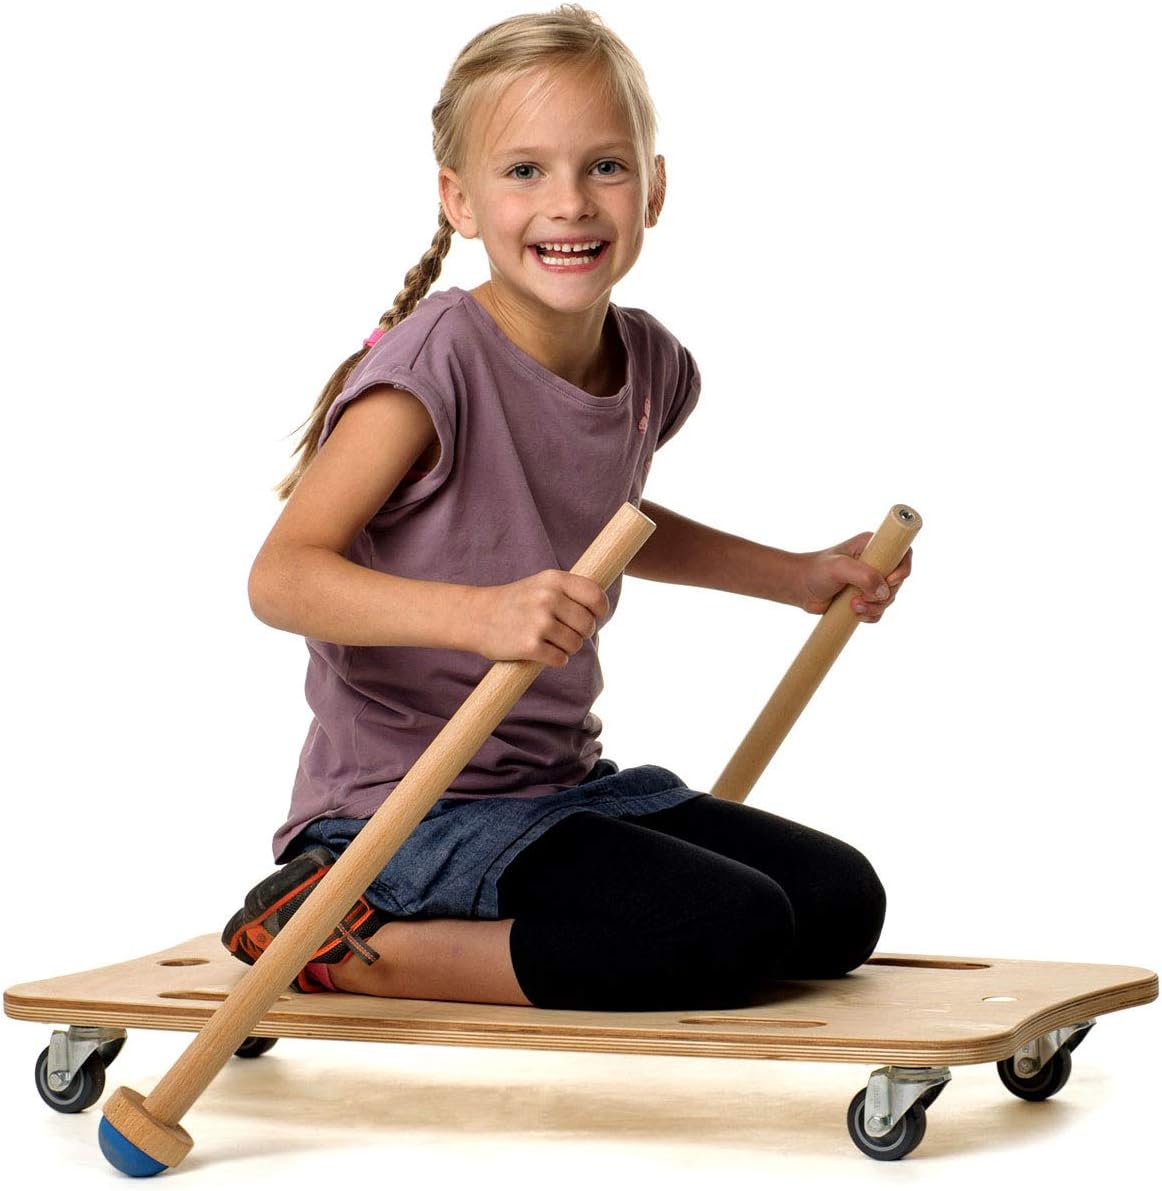 Erzi: Wooden board on wheels, the Maxi Roller Board skateboard